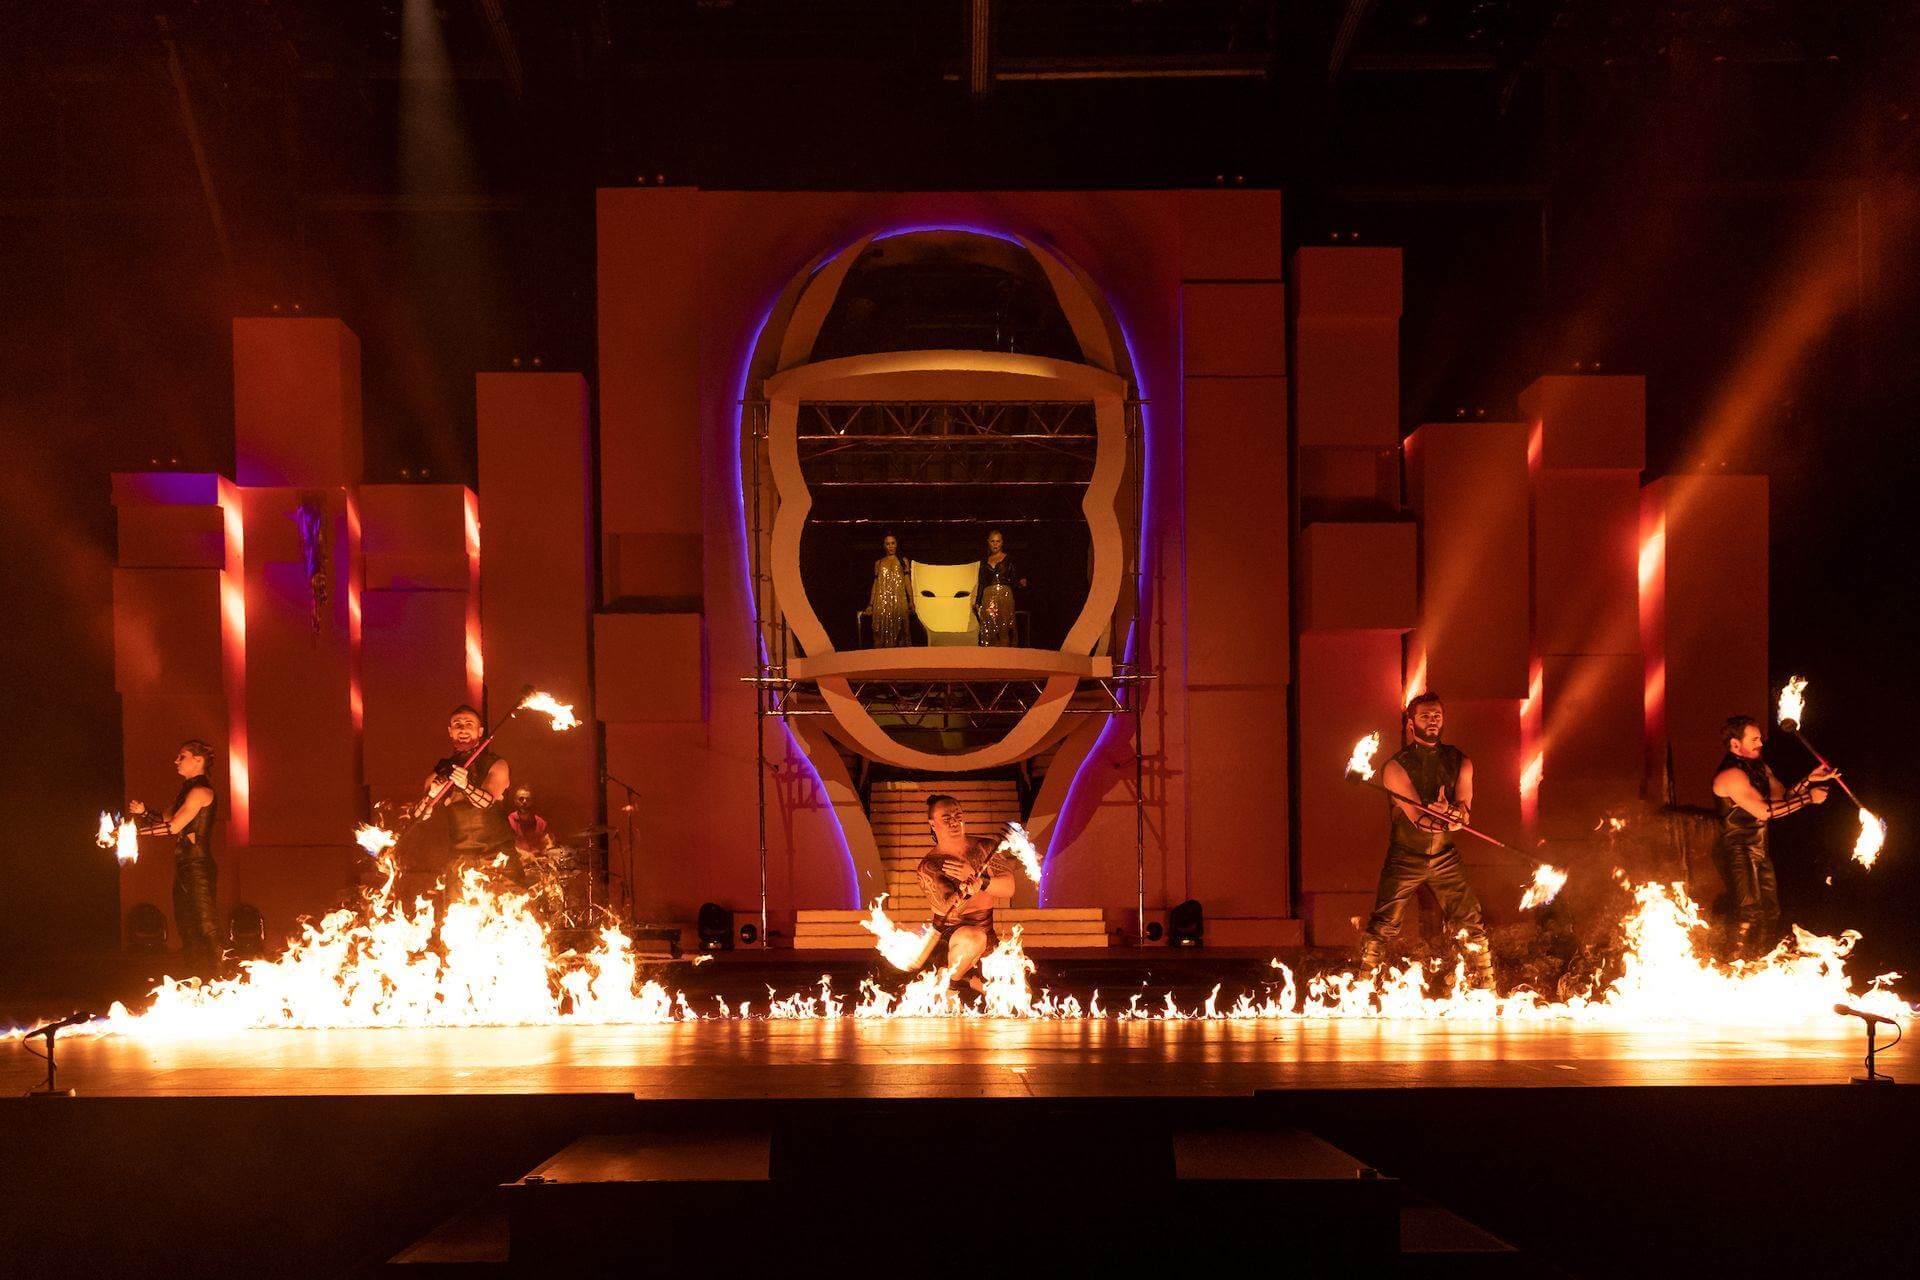 Diva by Cirque du Soleil 2018: Artistas haciendo juegos malabares con fuego